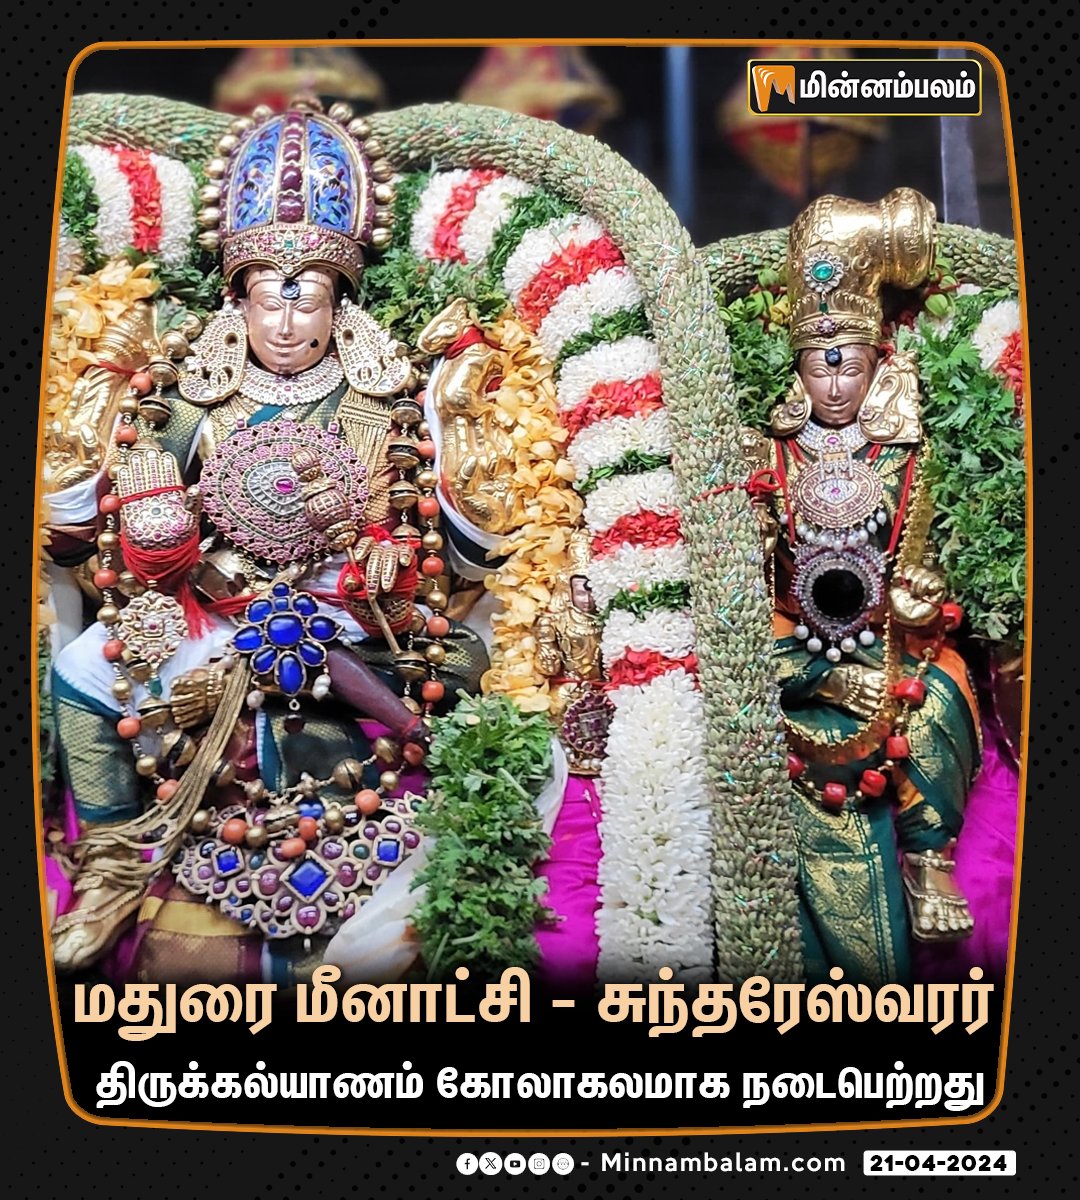 மதுரை மீனாட்சி - சுந்தரேஸ்வரர் திருக்கல்யாணம் கோலாகலமாக நடைபெற்றது #Minnambalam #Madurai #MeenakshiAmmanTemple #ChithiraiFestival